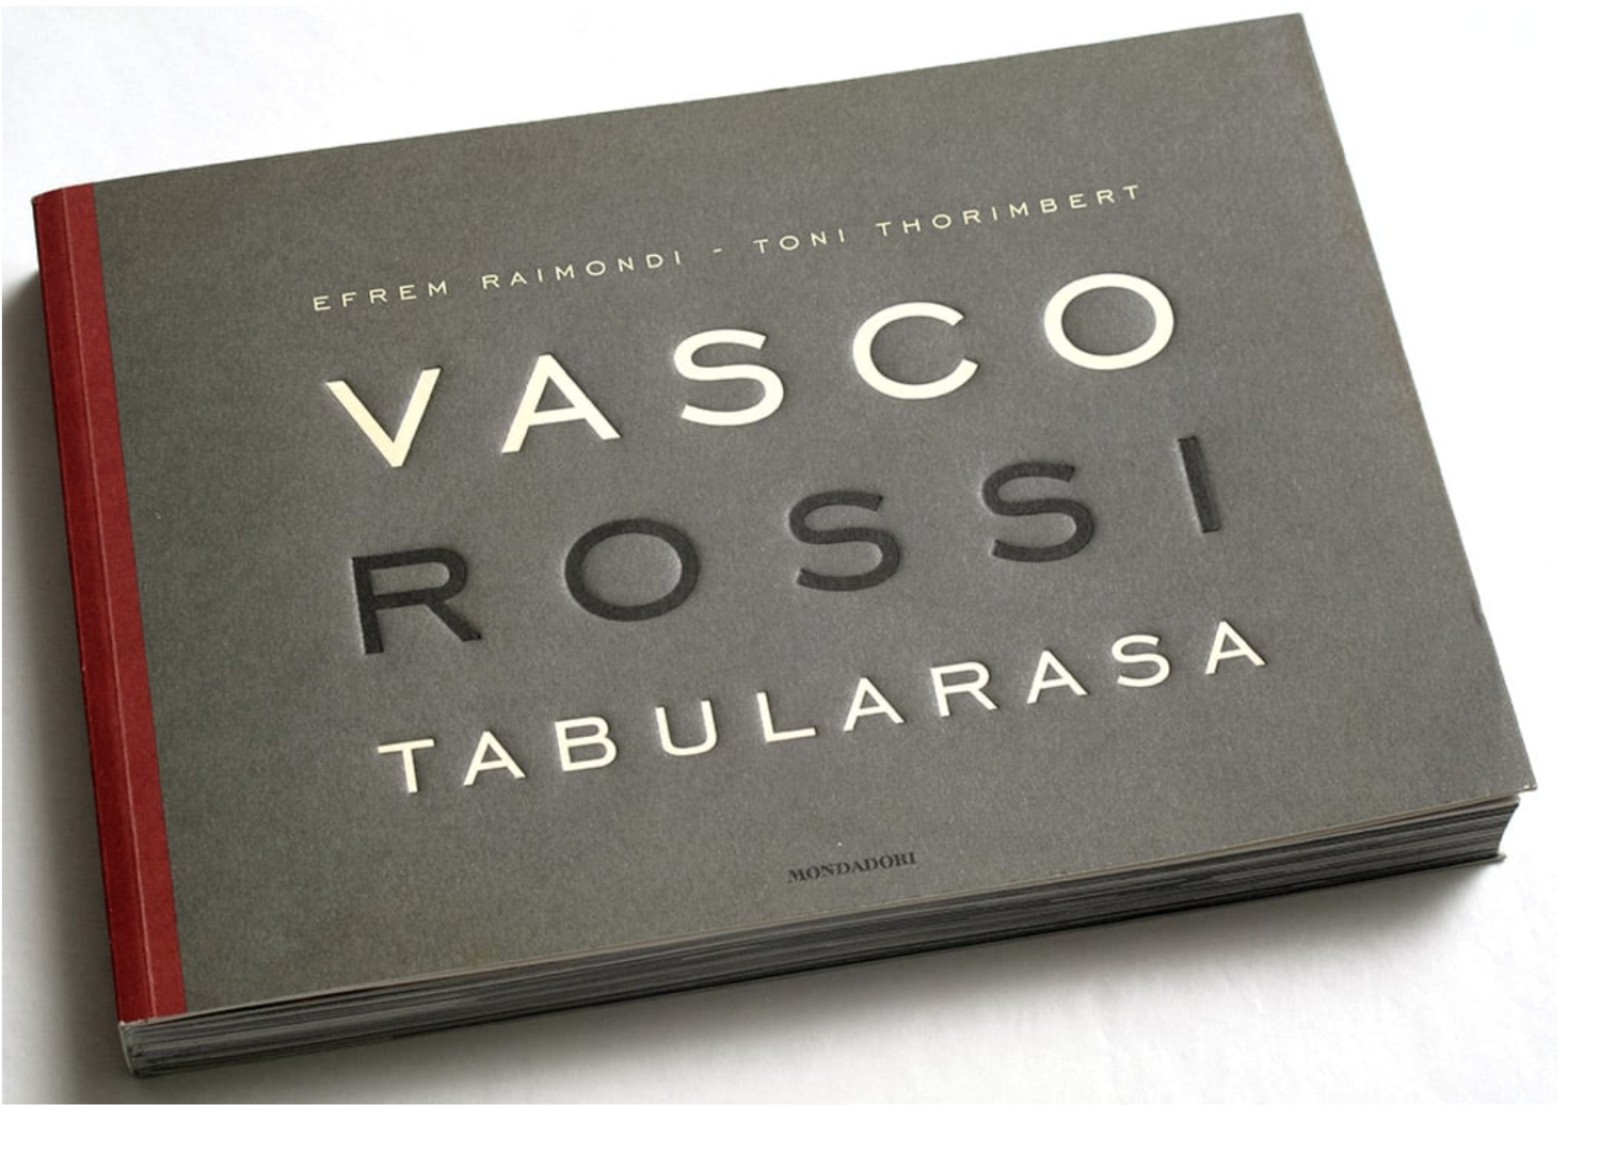 Tabularasa / Vasco Rossi